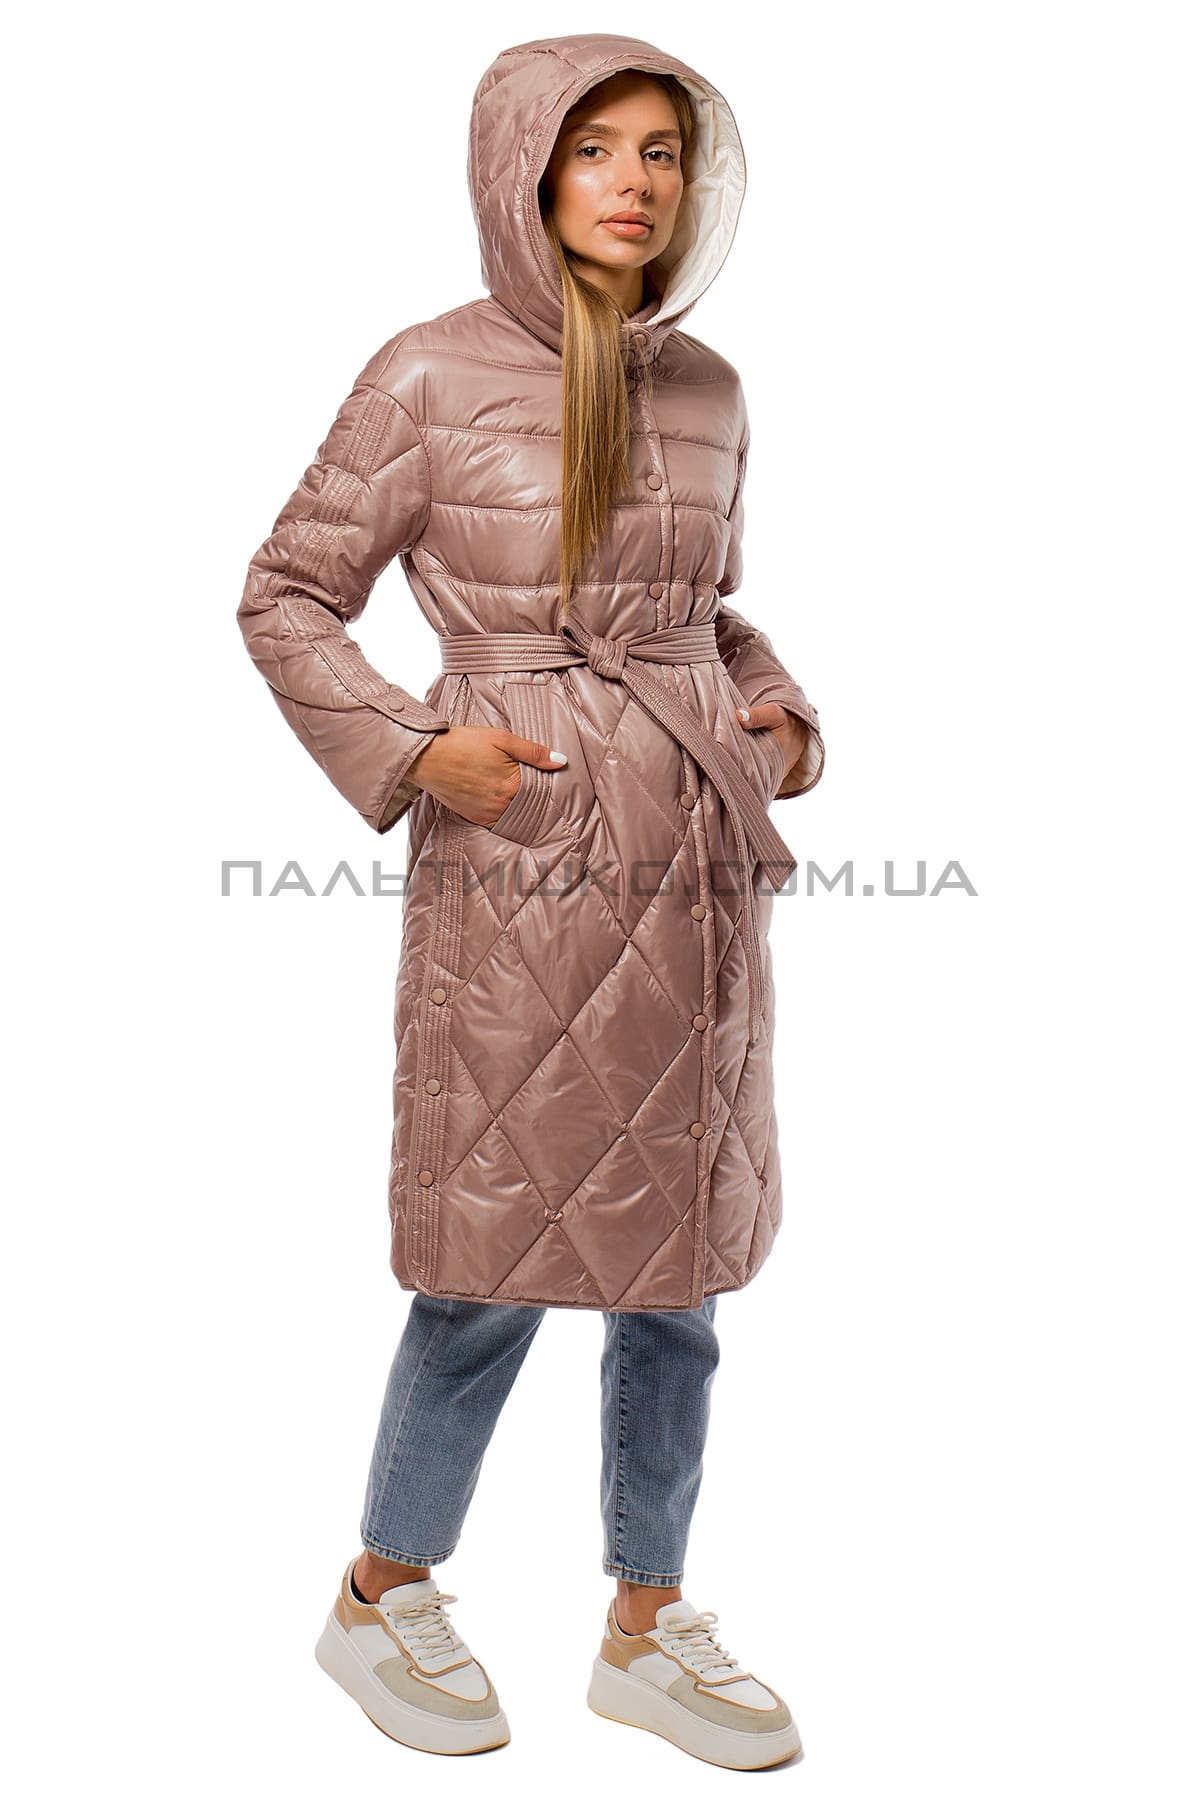  Жіноча куртка перламутрова рожева